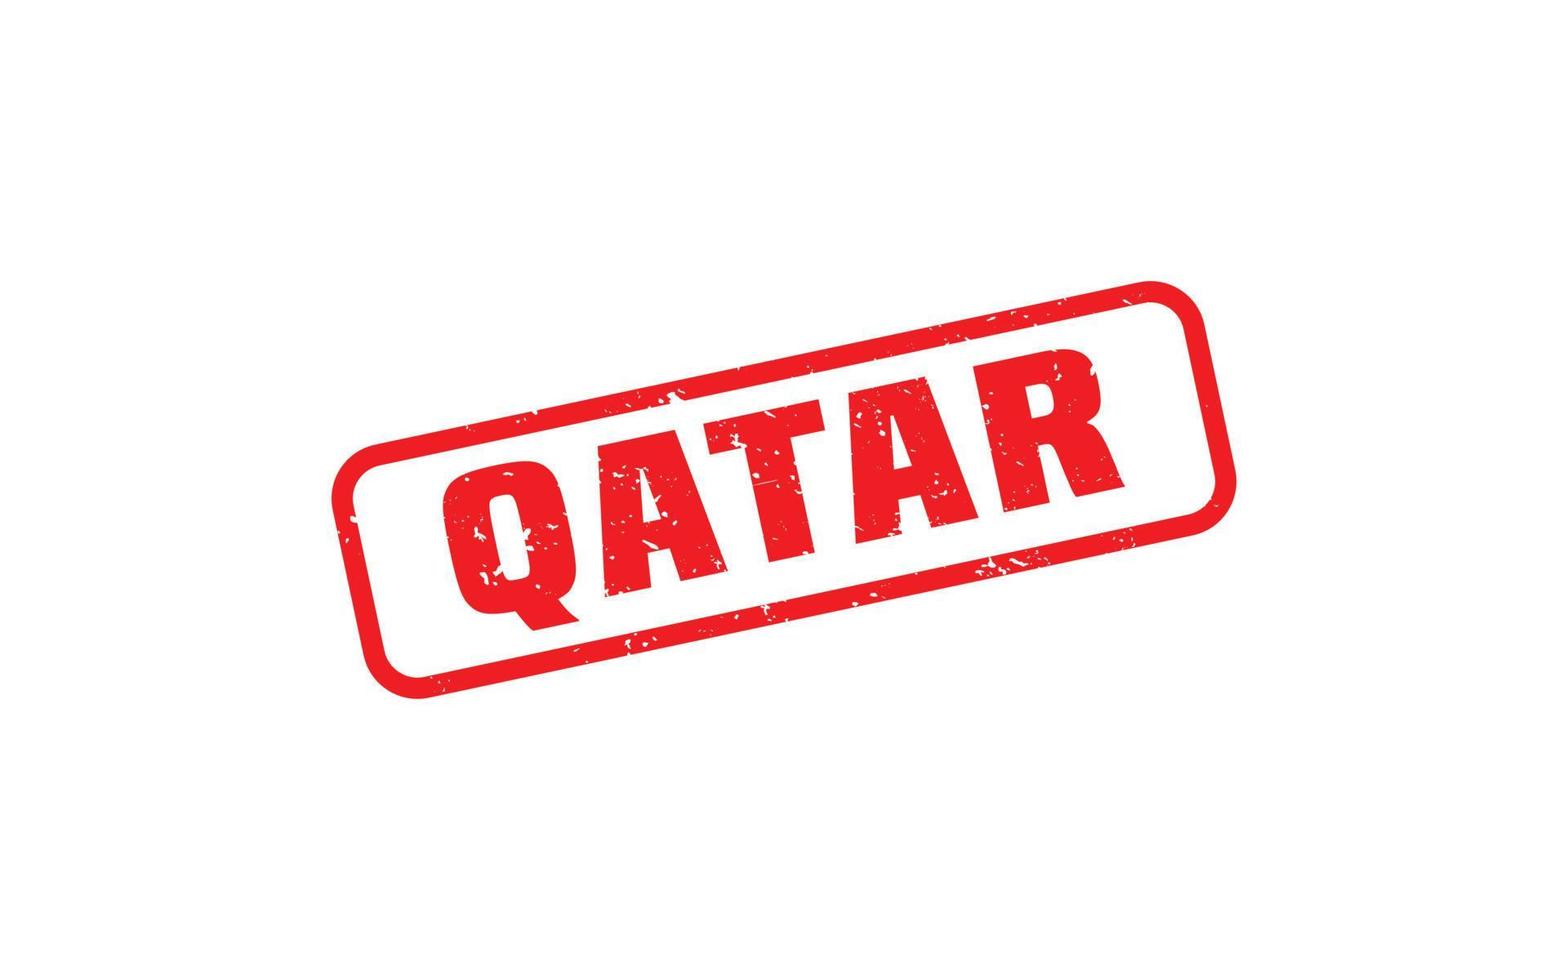 timbre qatar en caoutchouc avec style grunge sur fond blanc vecteur